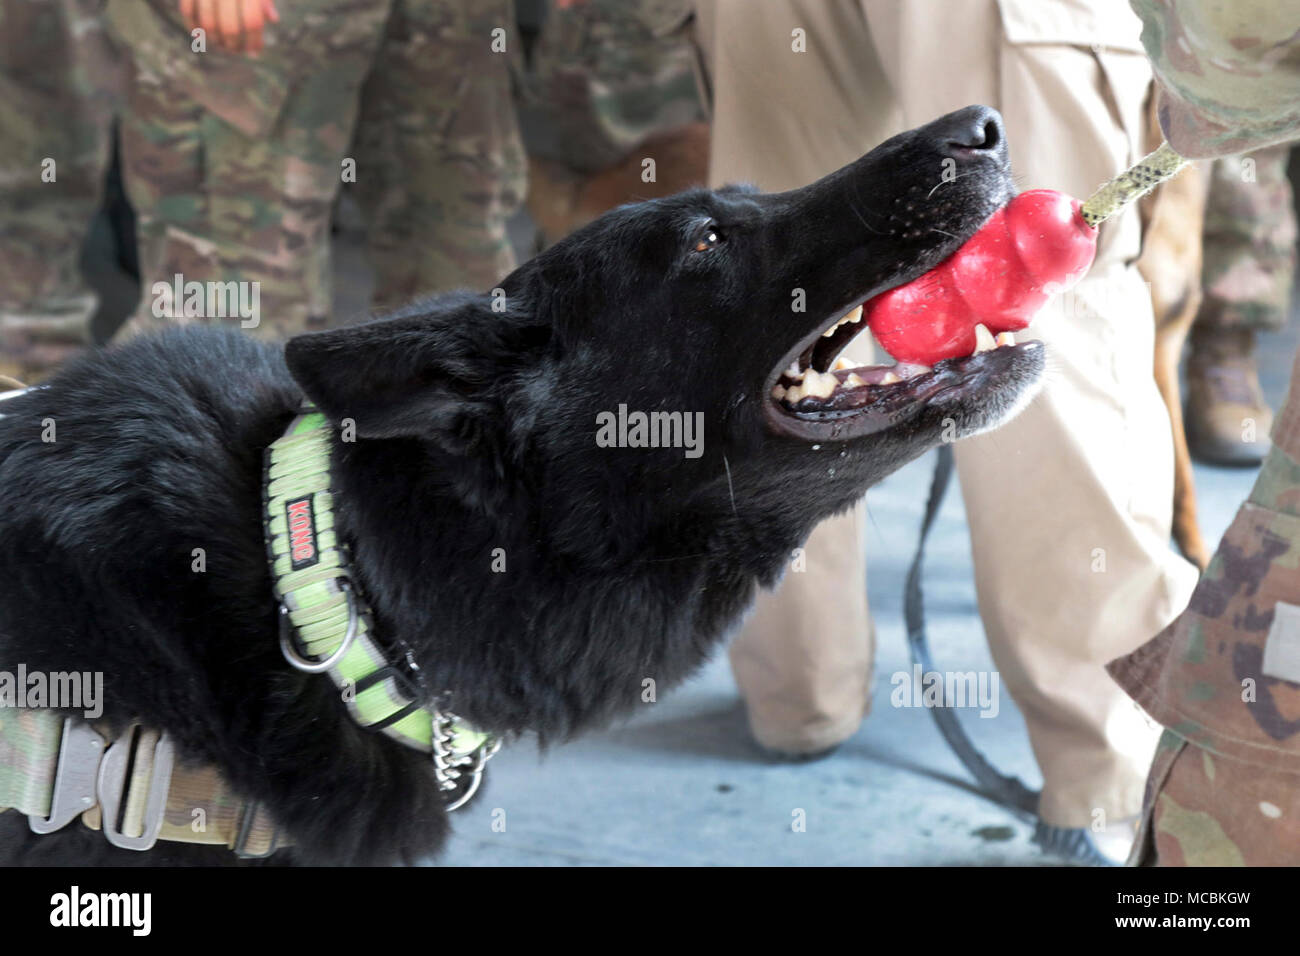 L'AÉRODROME DE BAGRAM (Afghanistan) - Hulk, un chien détecteur de bombes américaines avec K-9 Services de détection, joue tug-o-war avec un agent des douanes à l'aérodrome de Bagram, en Afghanistan, le 23 mars. Après avoir réussi à contrôler les bagages pour des explosifs ou de la drogue, les chiens de détection sont récompensés par leurs jouets Kong. Banque D'Images